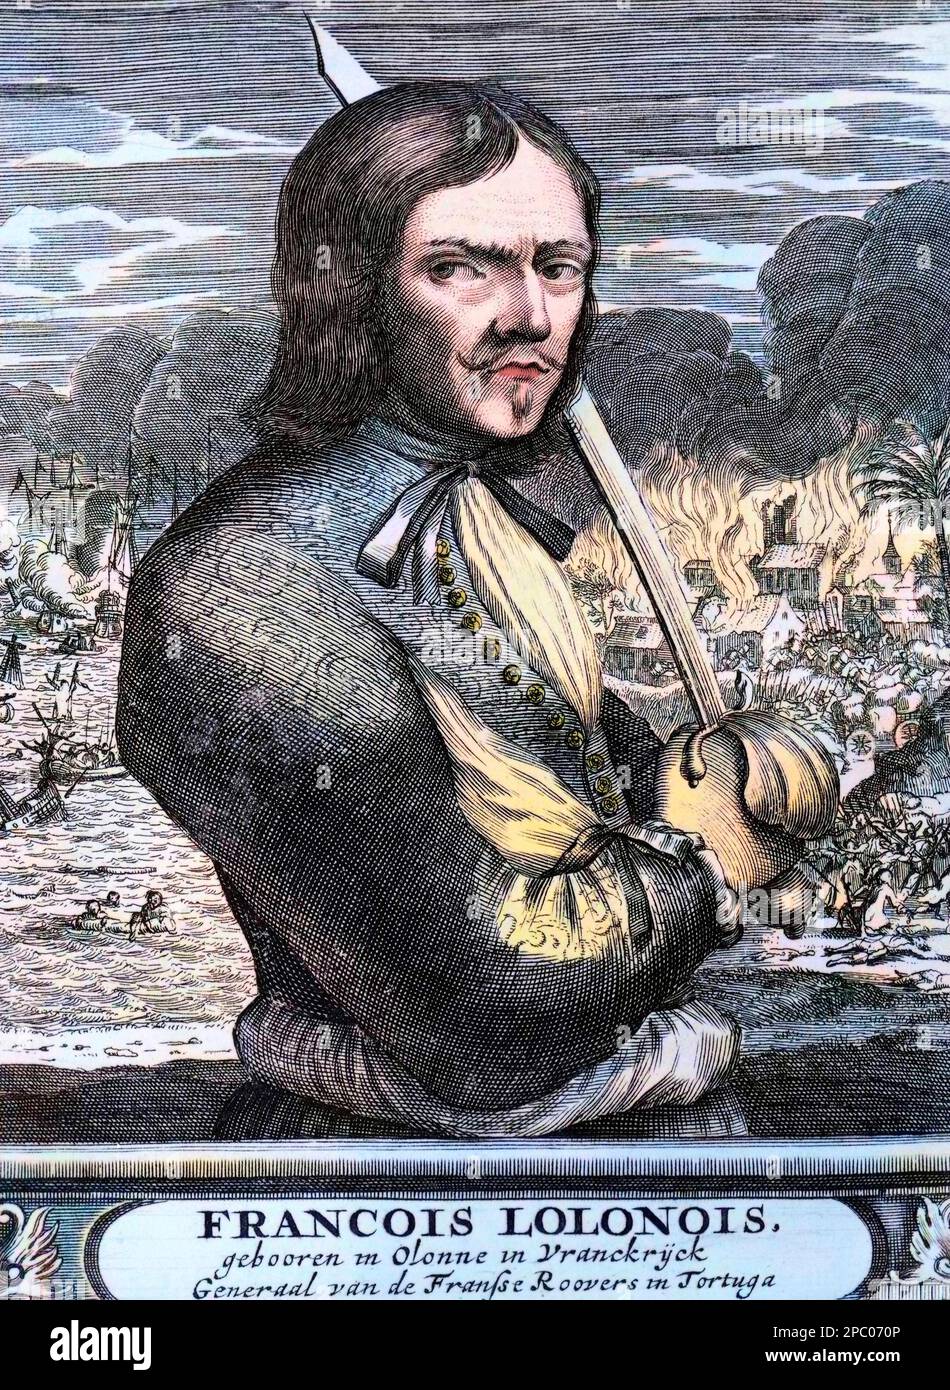 Francois l'Olonnais (l'Olonnois, Lolonois ou Lolona) - Portrait of Jean-David Nau, better known as Francois l'Olonnais (ca 1635-1668), French pirate and buccaneer Stock Photo